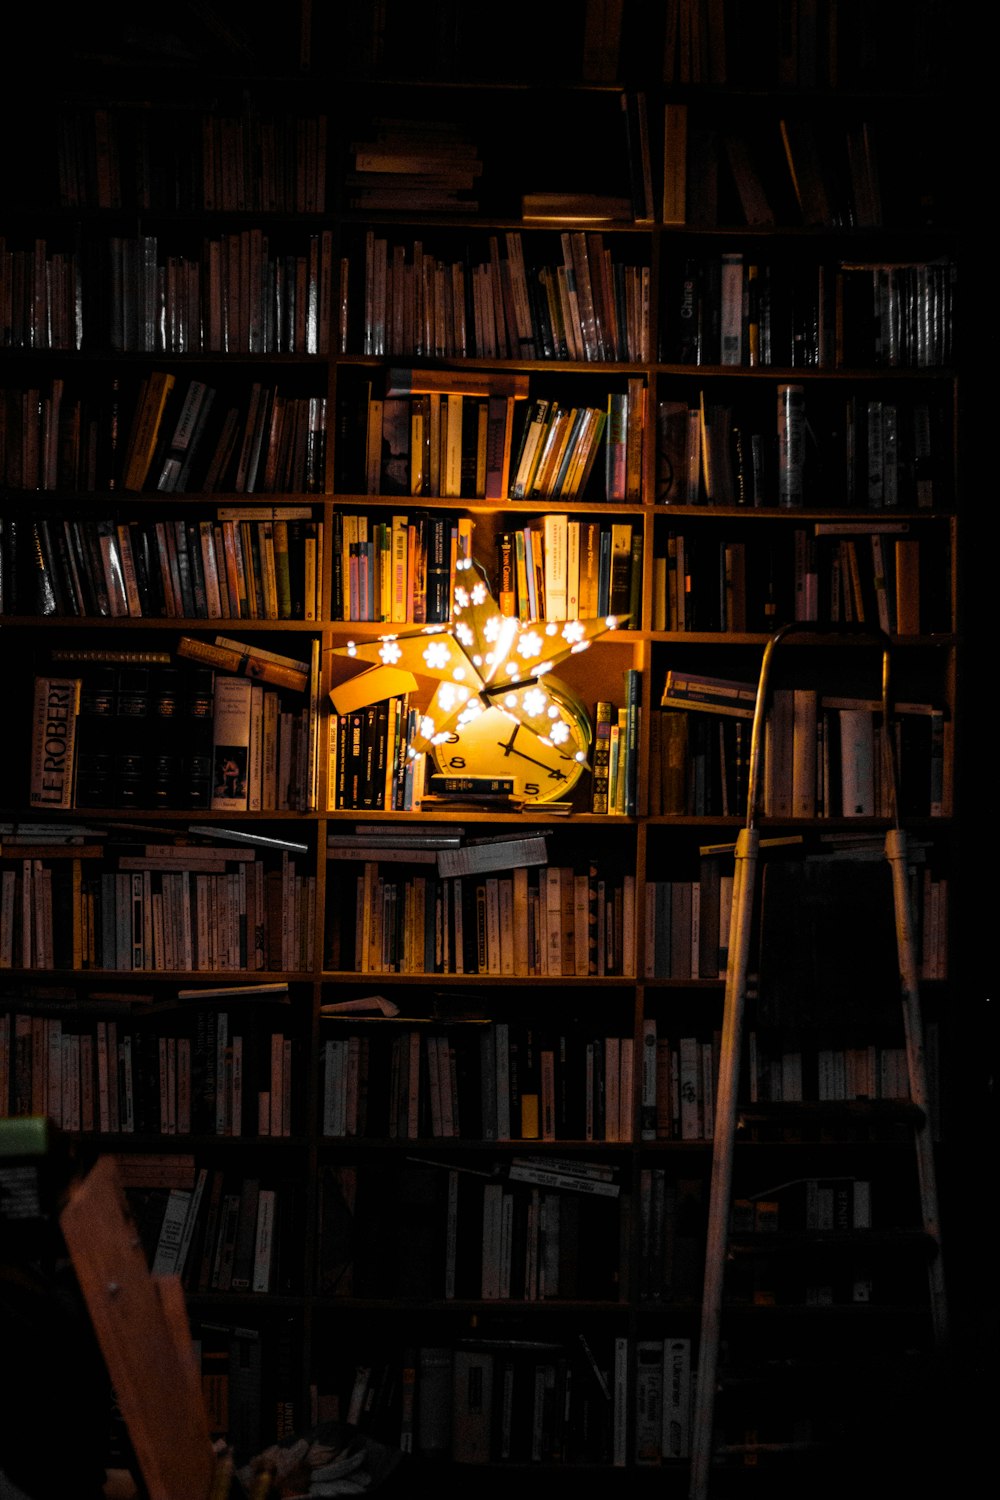 Fotografie von Bücherregal und Stern-LED-Lichtdekor